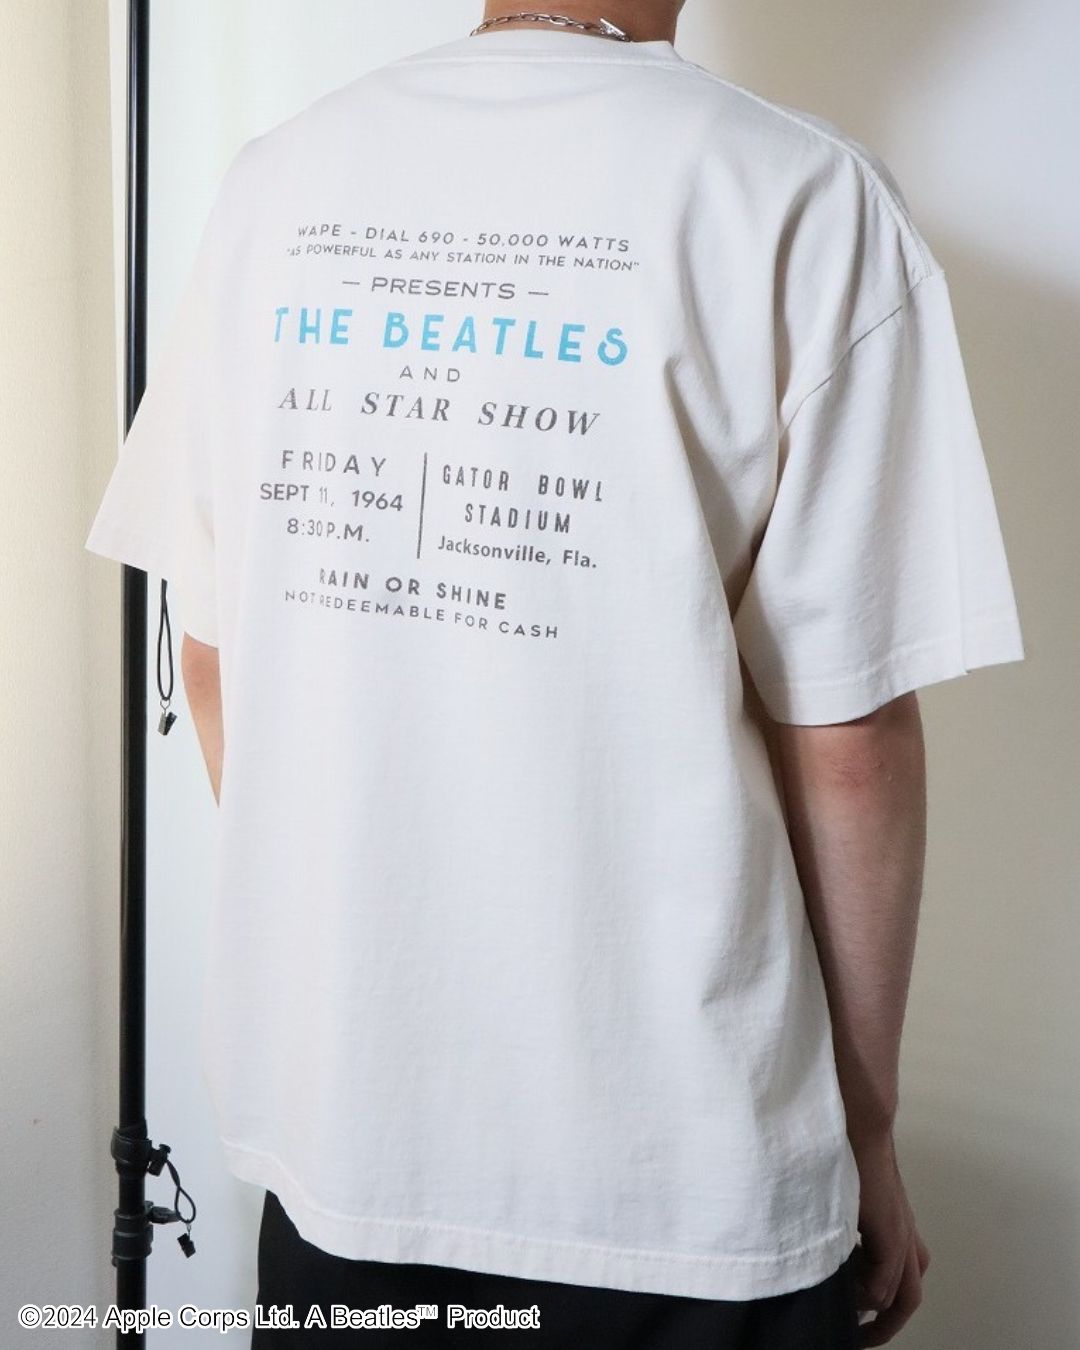 【ビートルズ】ピグメントプリントTシャツ